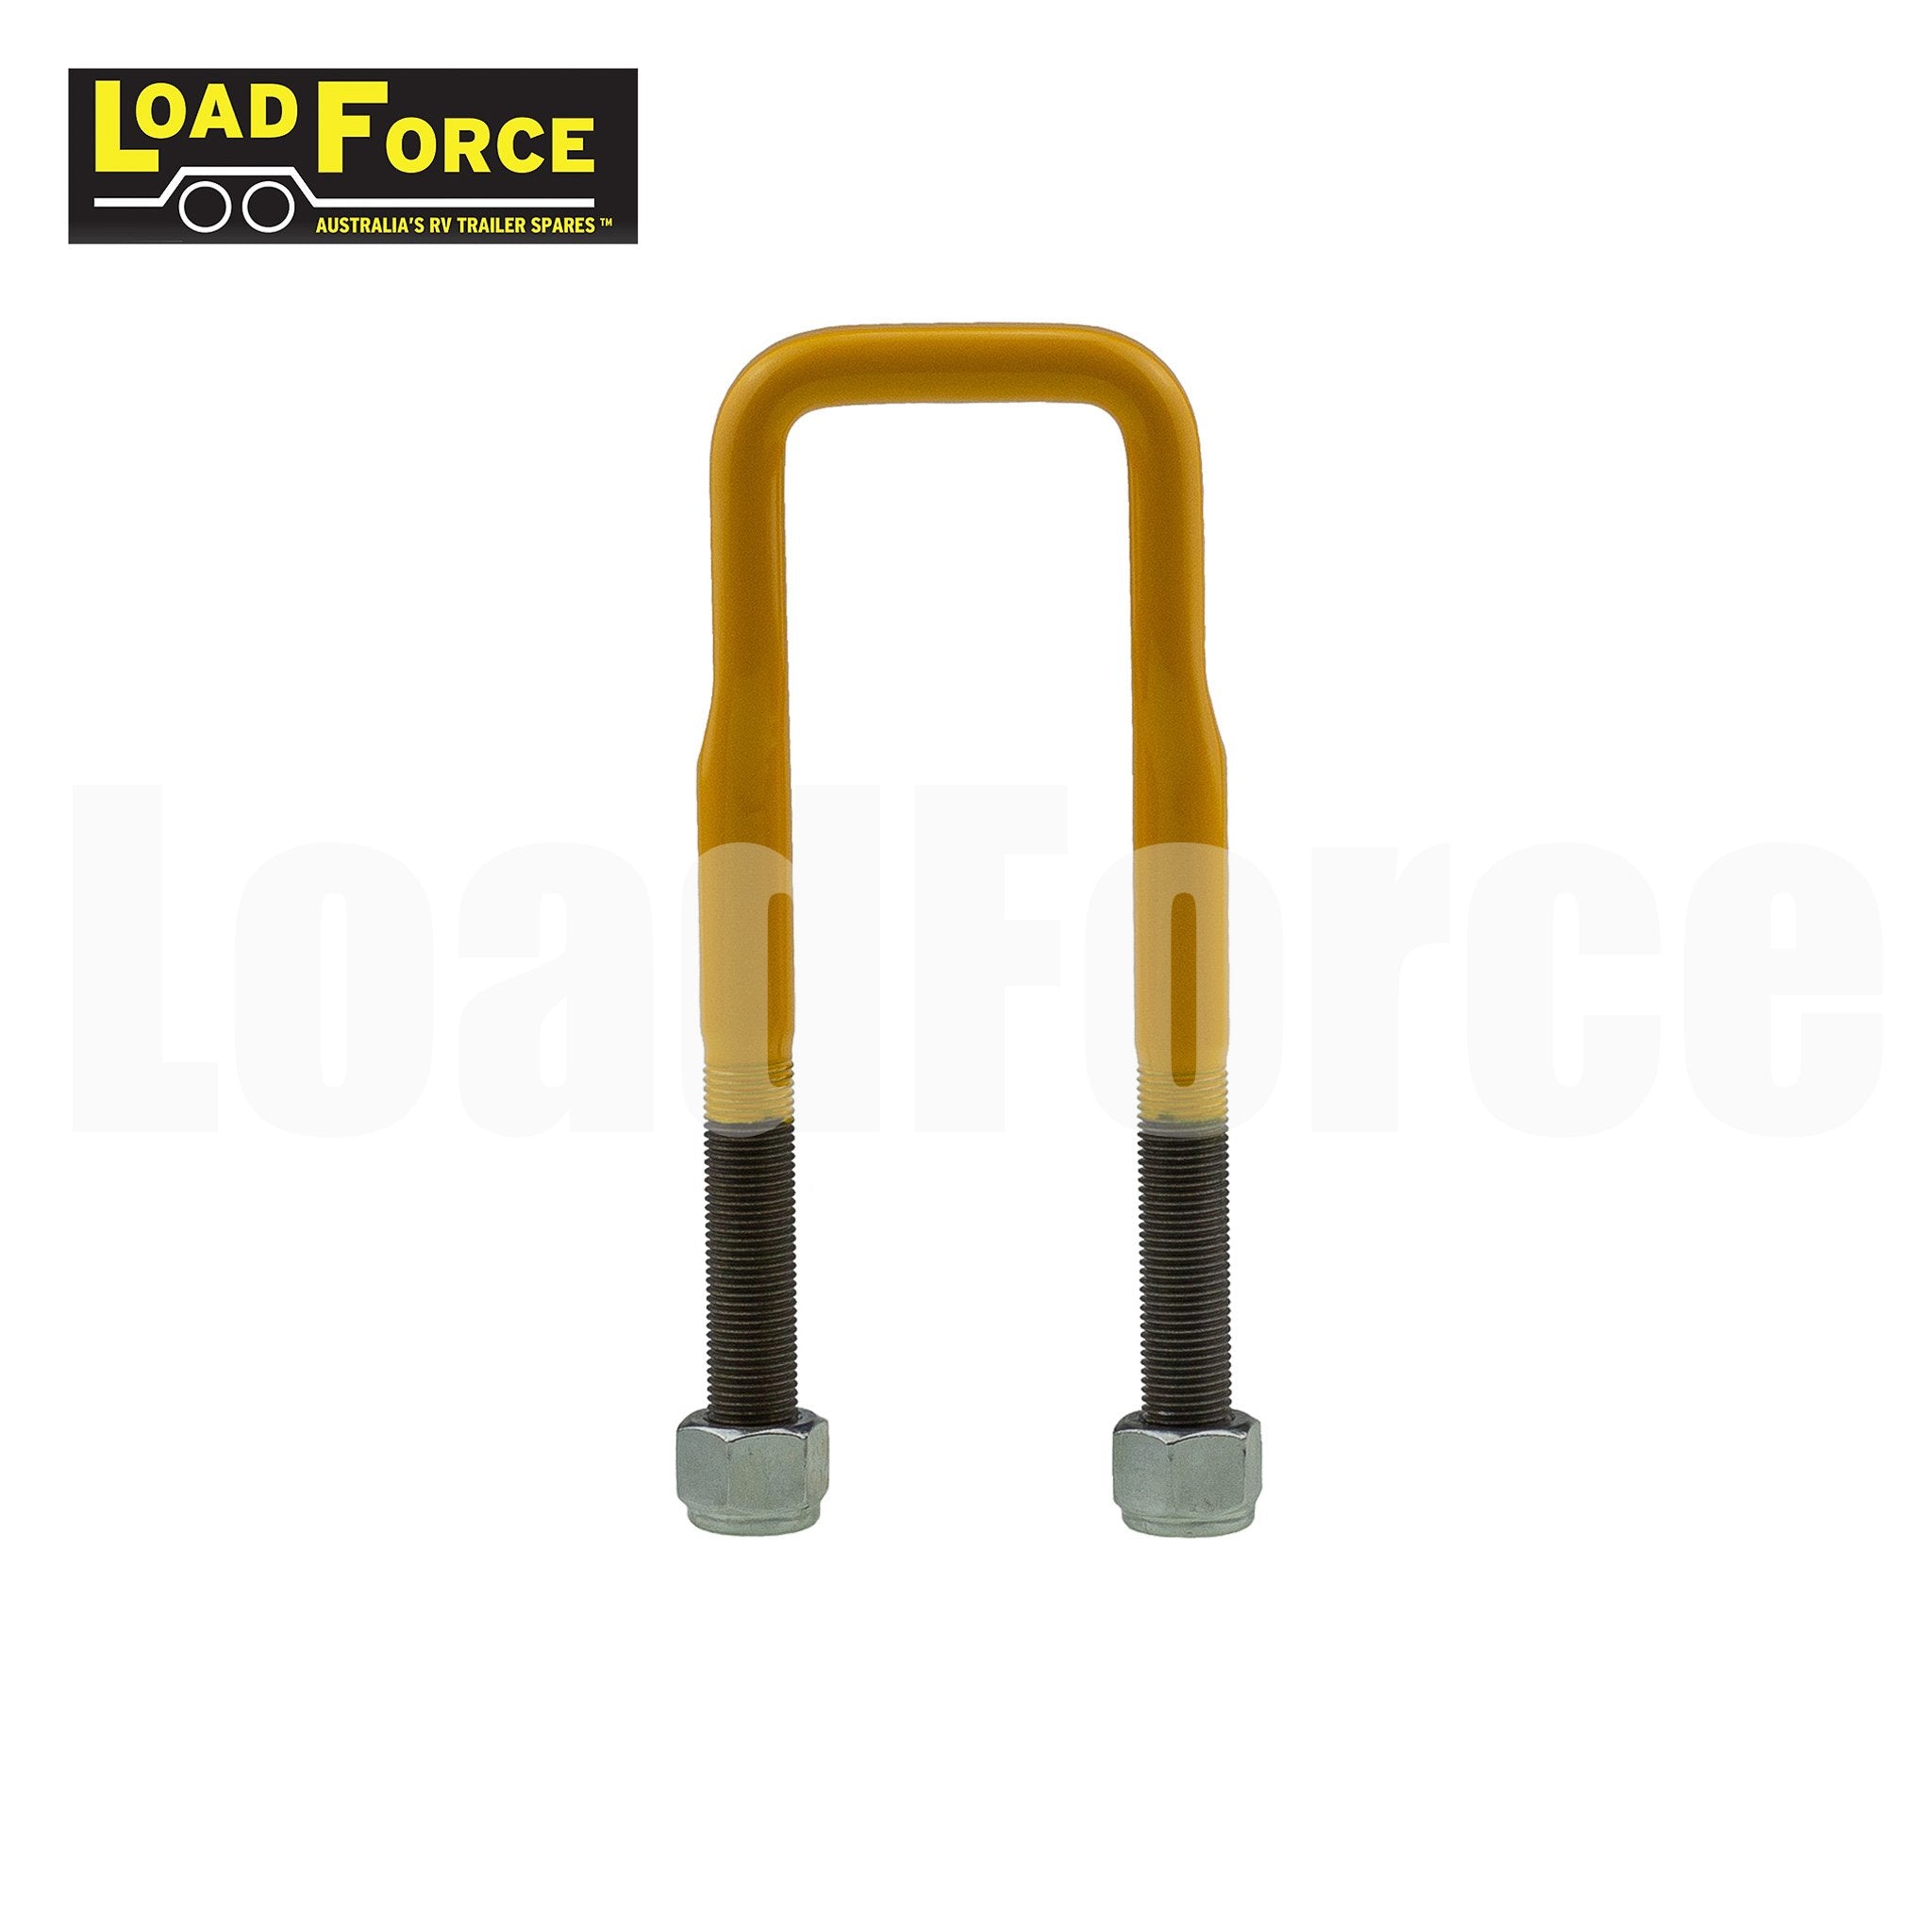 LoadForce caravan camper suspension u-bolt 45mm square yellow